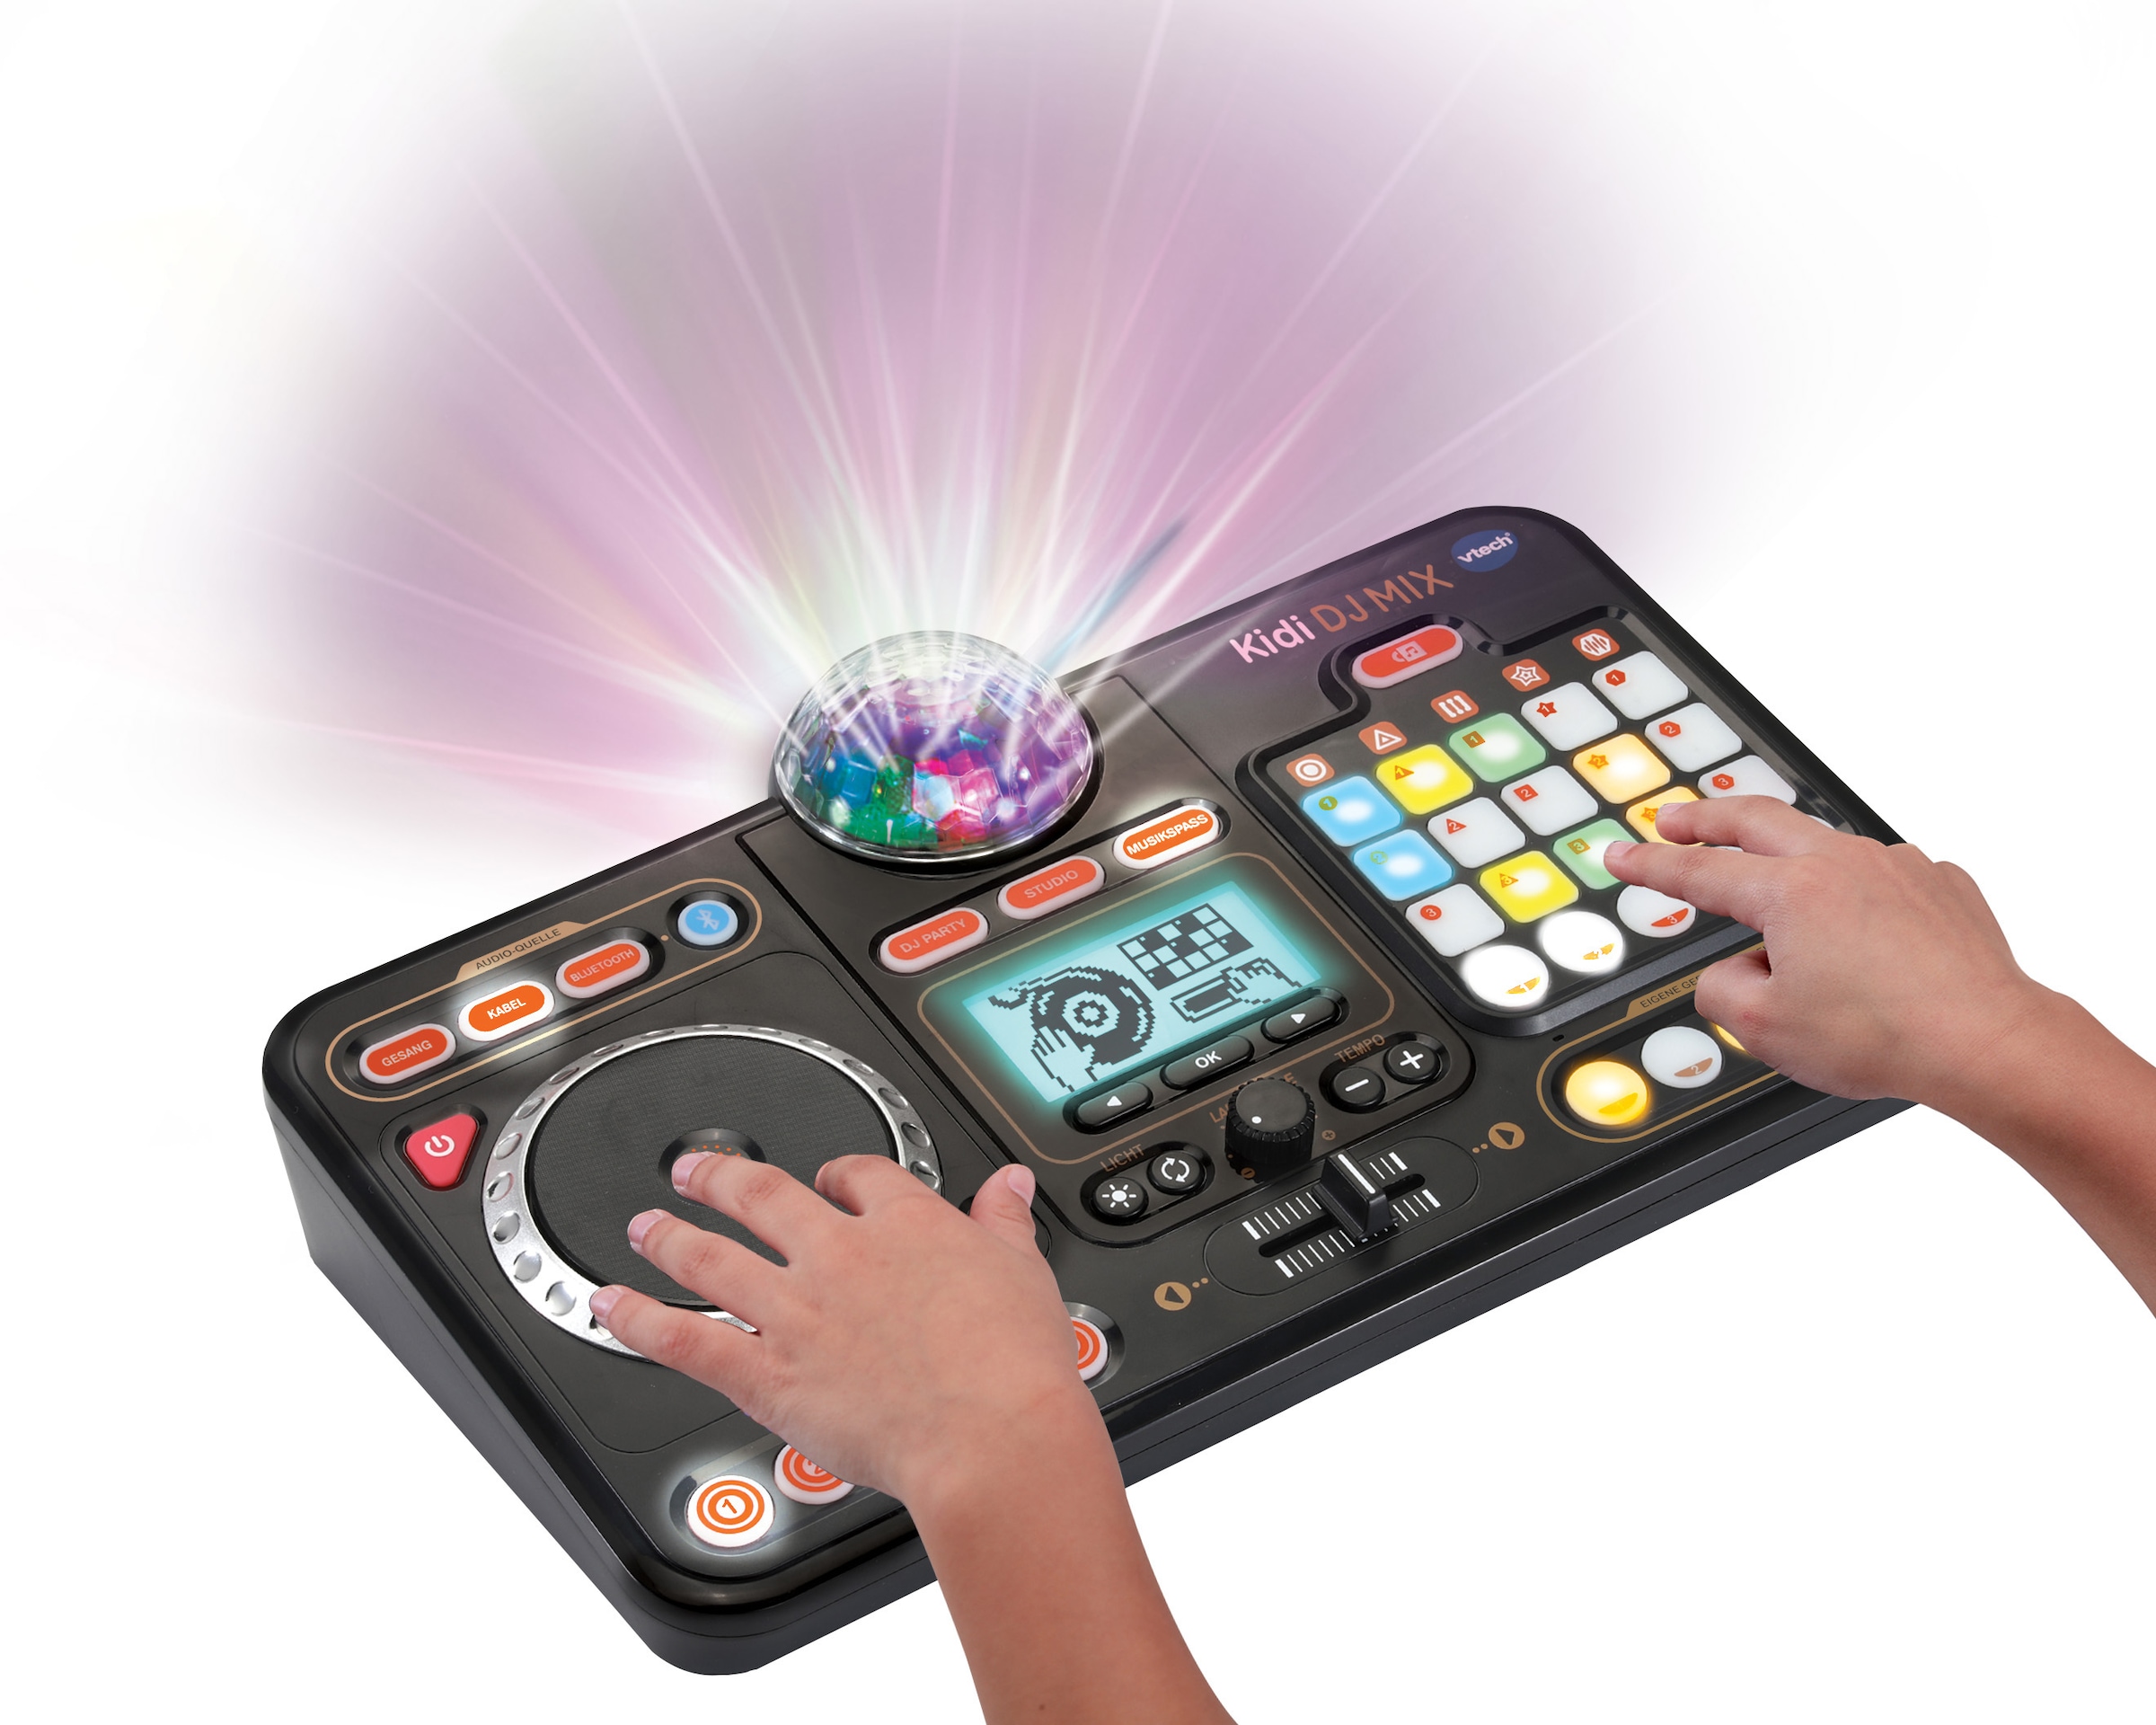 Vtech® Lerntablet »Kiditronics, Kidi DJ Mix«, mit Licht- und Soundeffekten  im OTTO Online Shop